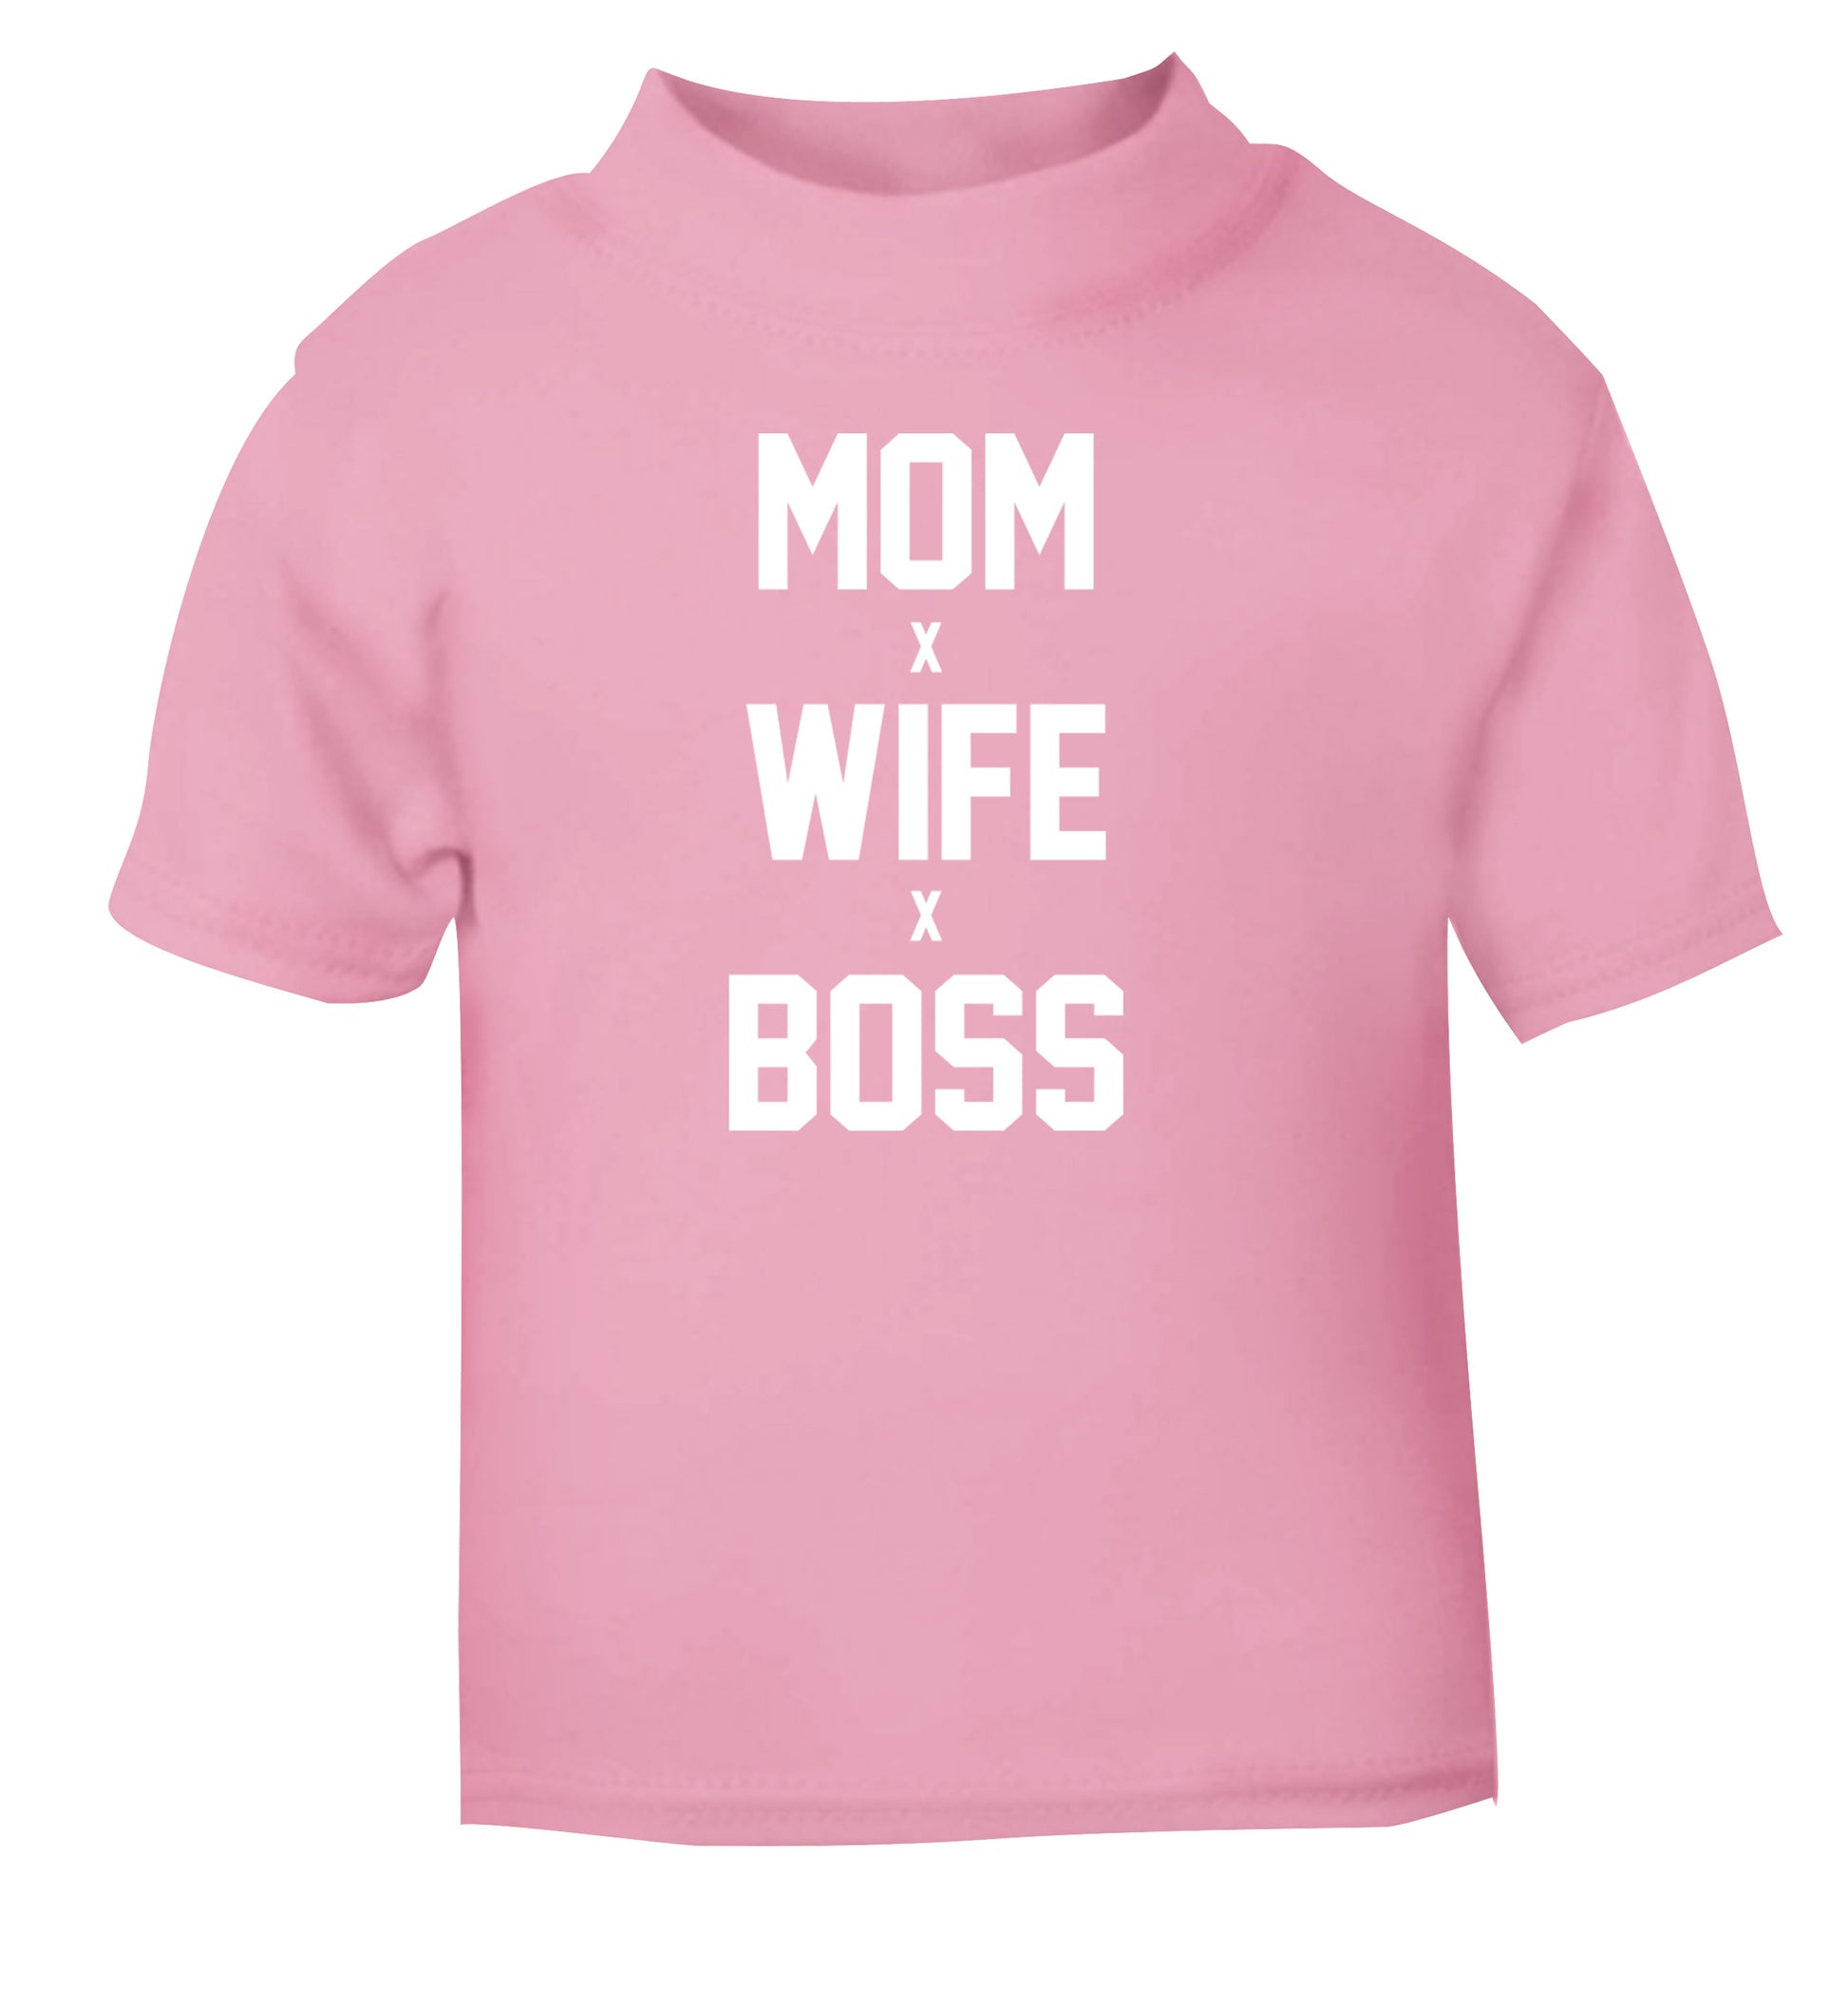 Mum wife boss light pink baby toddler Tshirt 2 Years